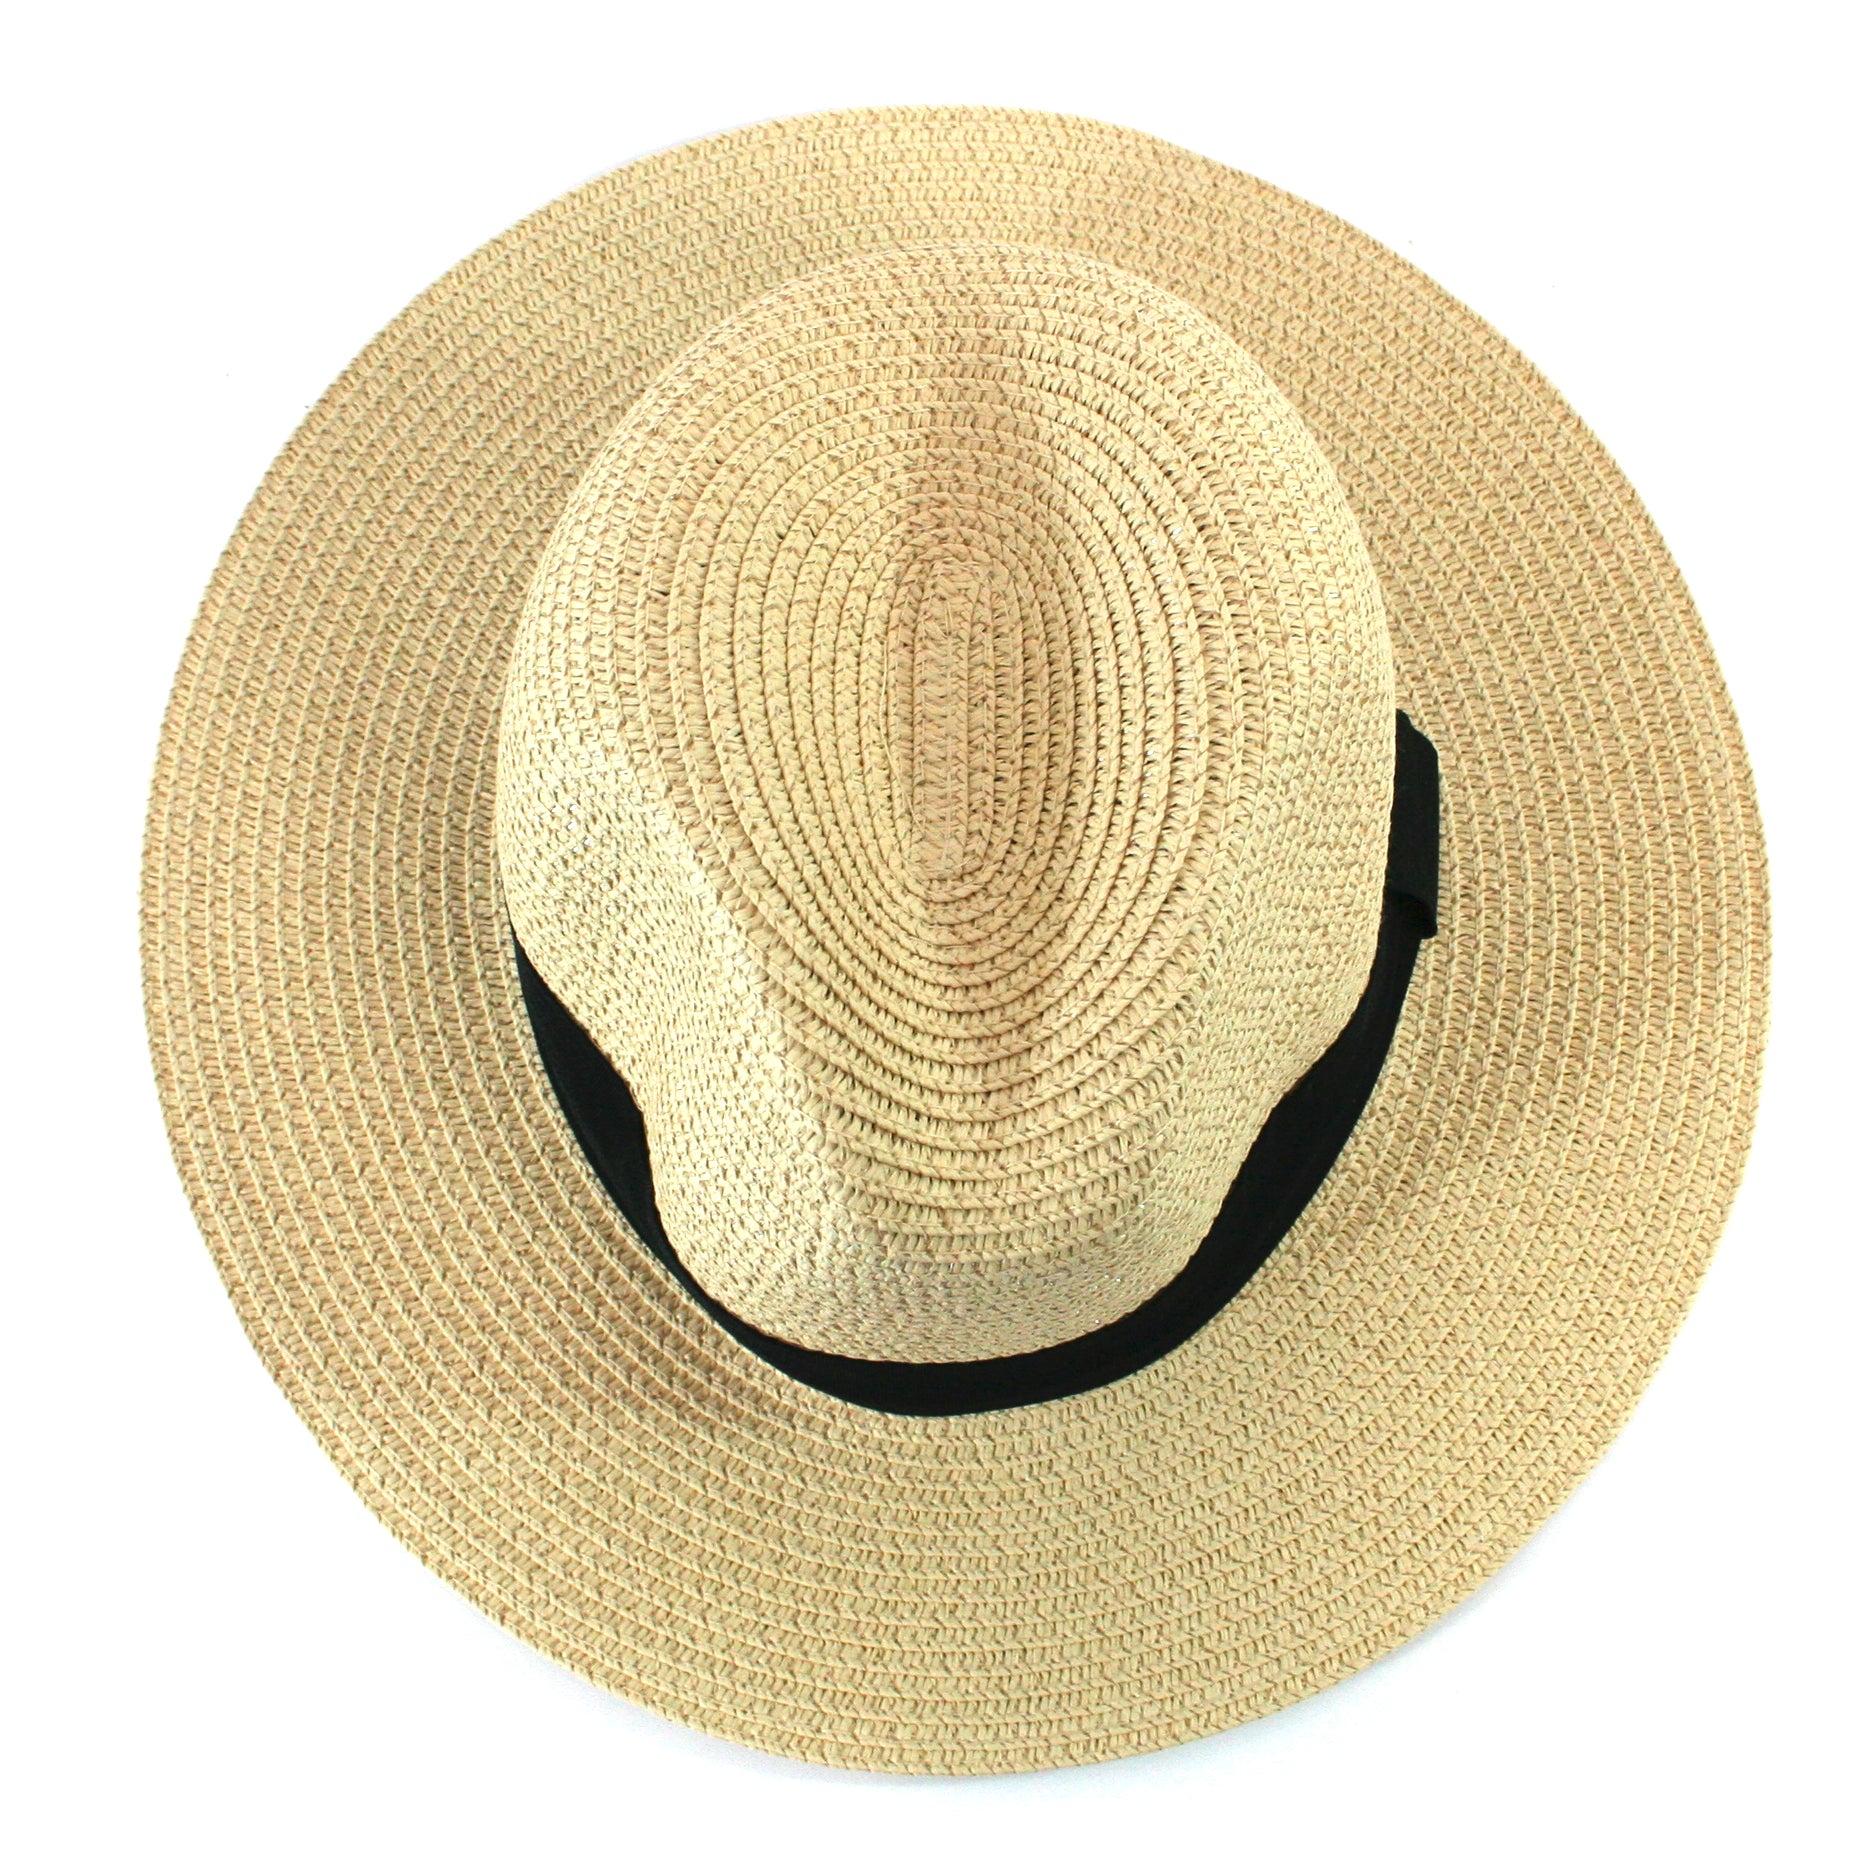 Chapeau de soleil pliable style Panama dans un sac - Grand (59 cm)